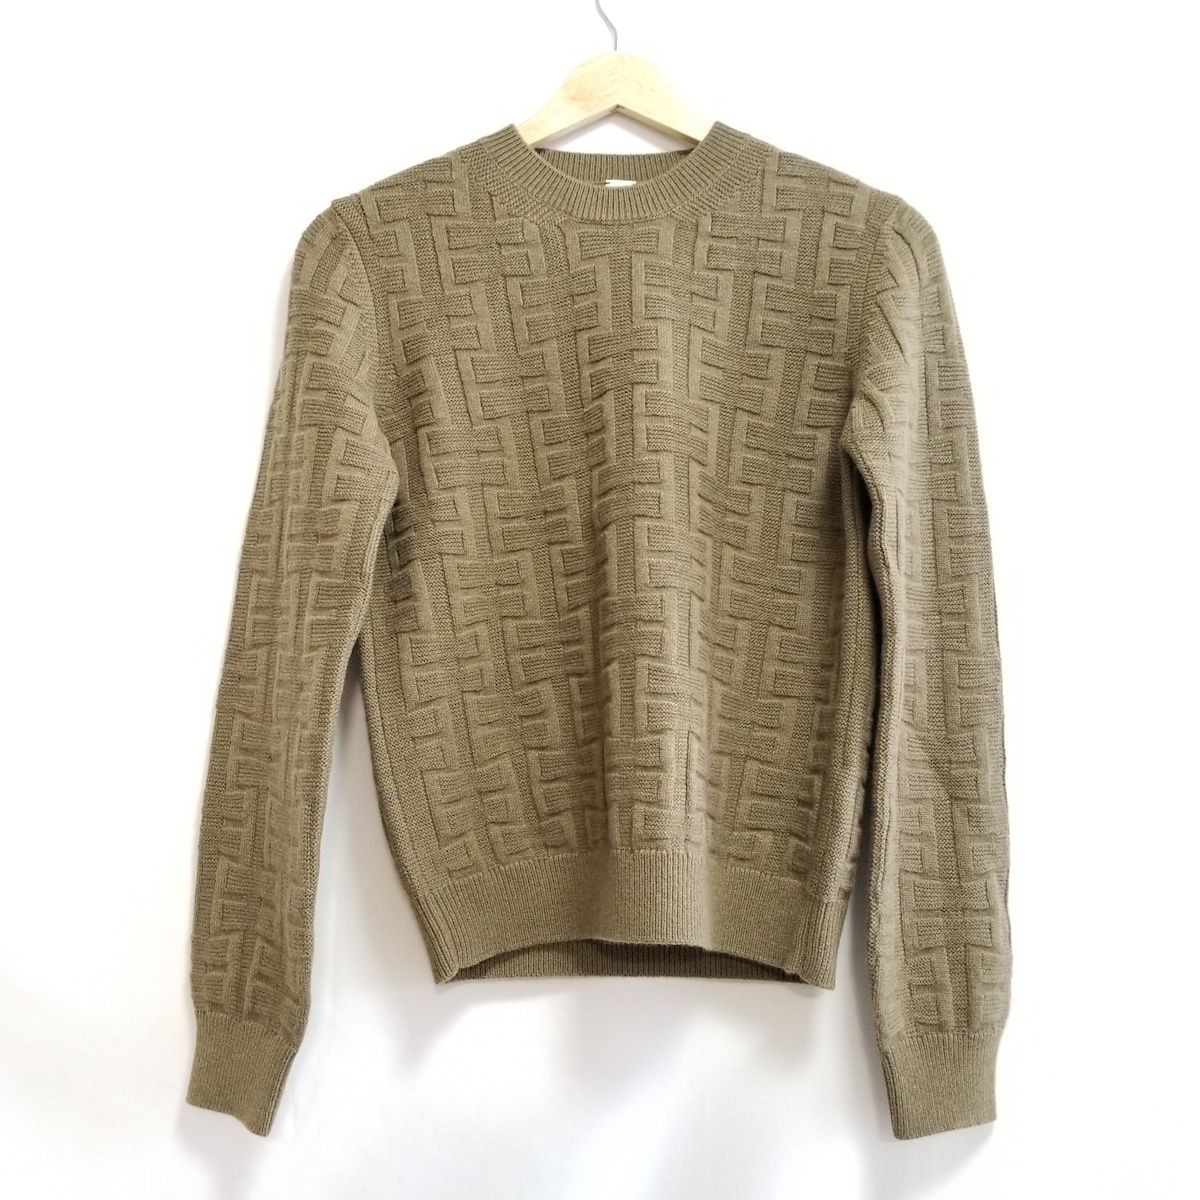 エルメス 長袖セーター サイズ38 M -ニット/セーター - ニット/セーター